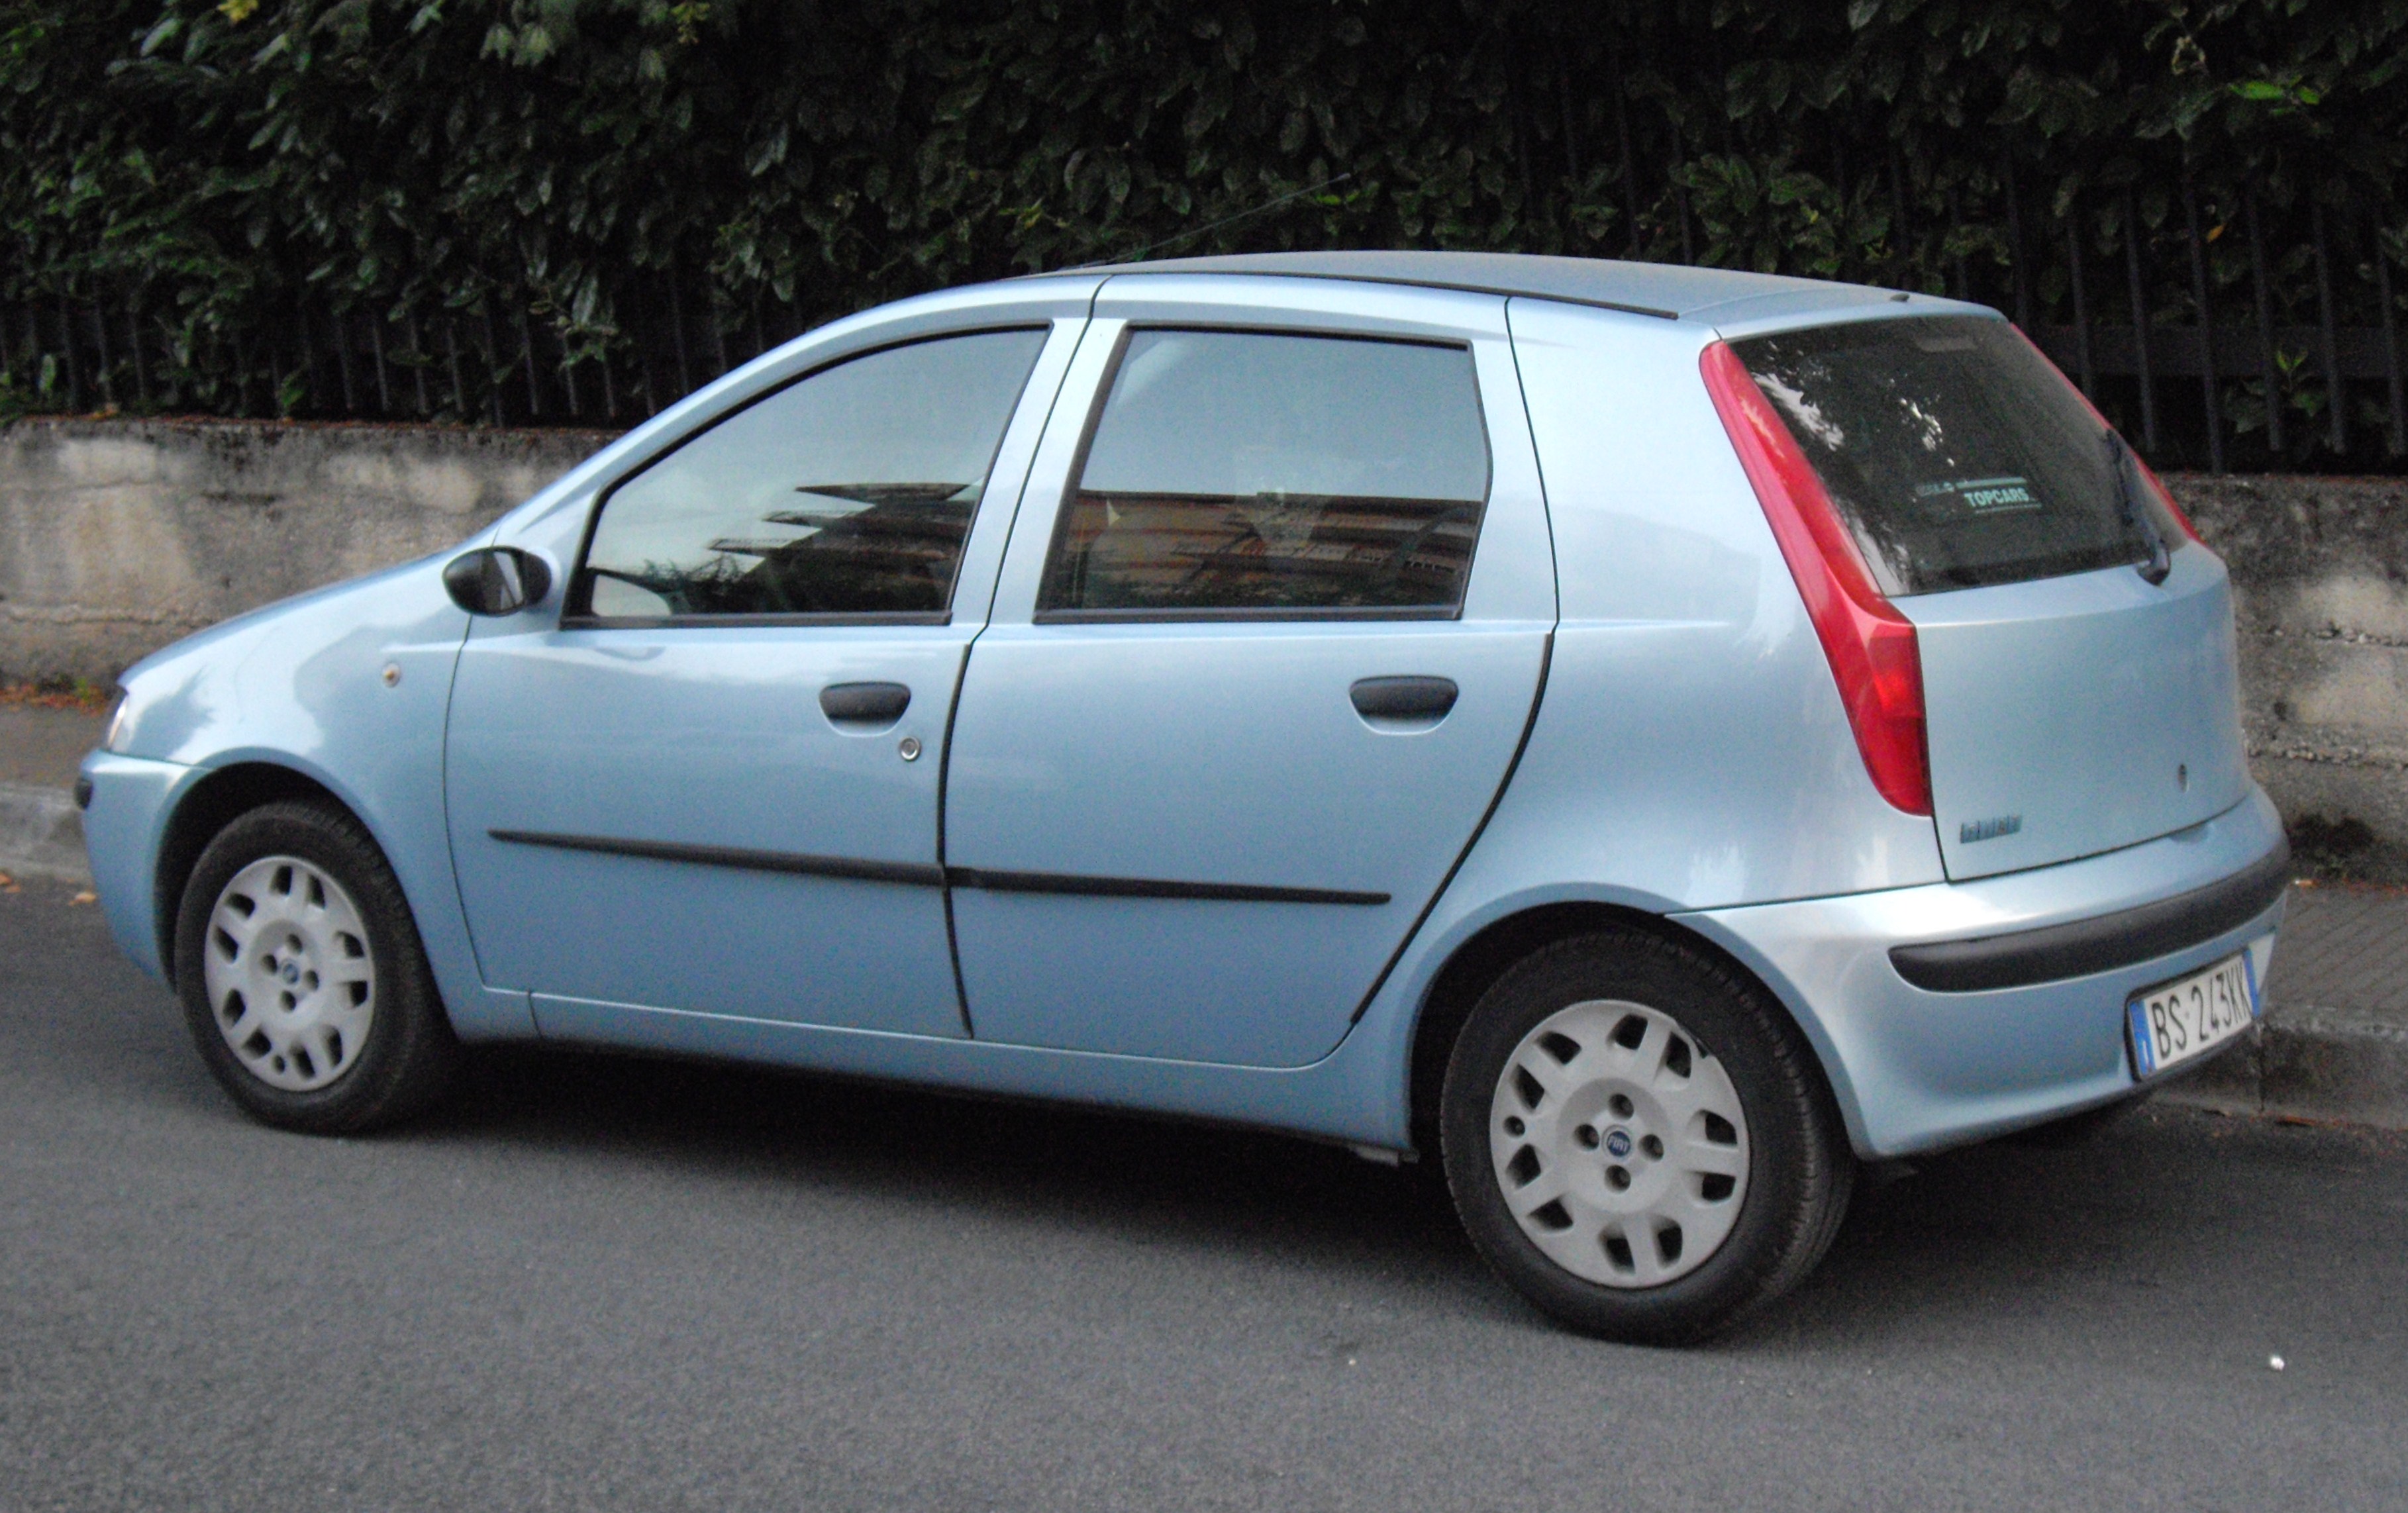 File:Fiat Punto Mk2 rear.JPG - Wikipedia